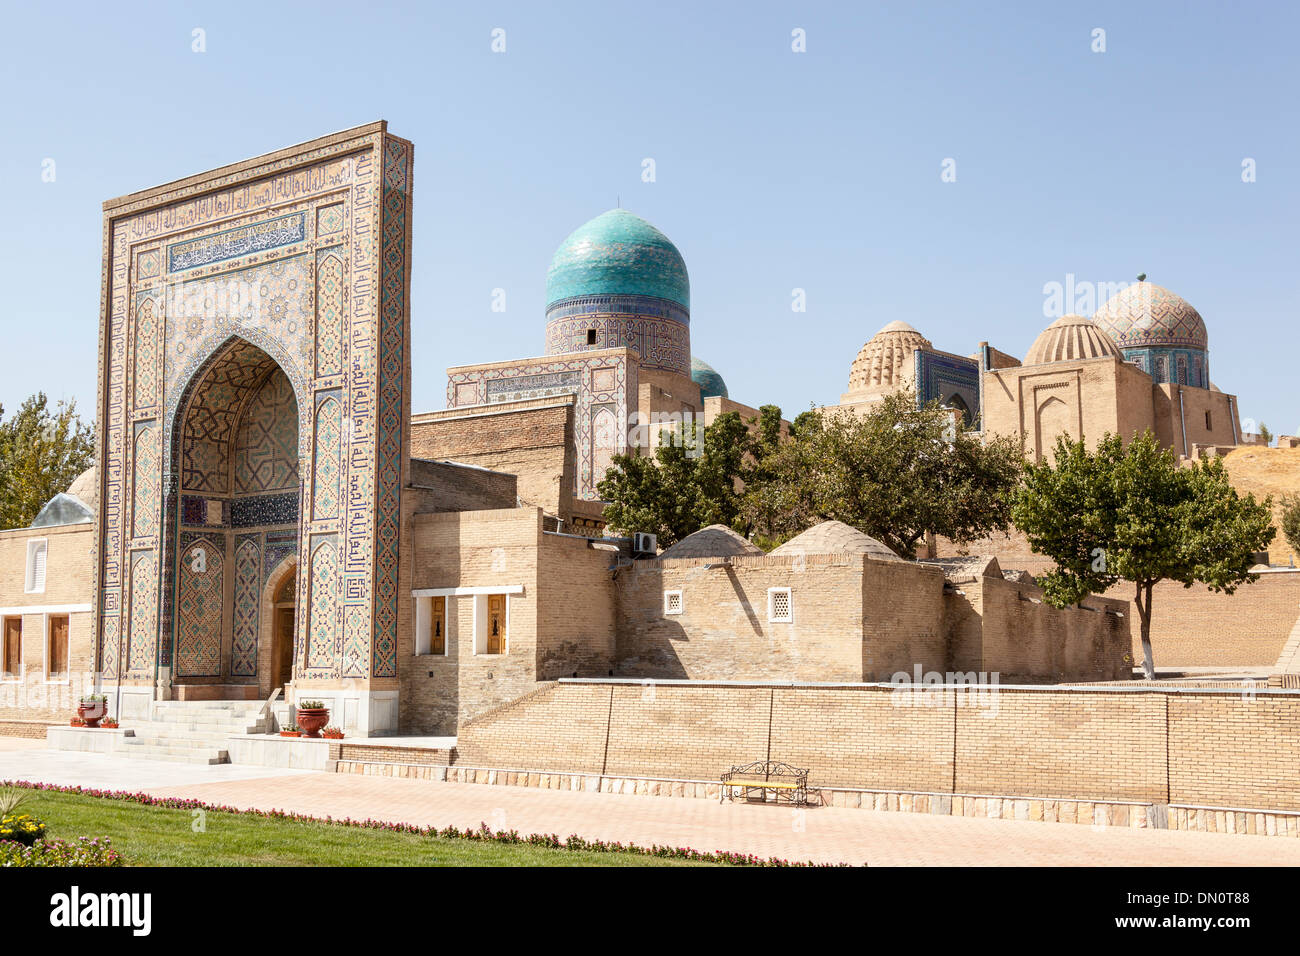 Entrance to Shah-i-Zinda, also known as Shah I Zinda and Shah-i Zinda, Samarkand, Uzbekistan Stock Photo